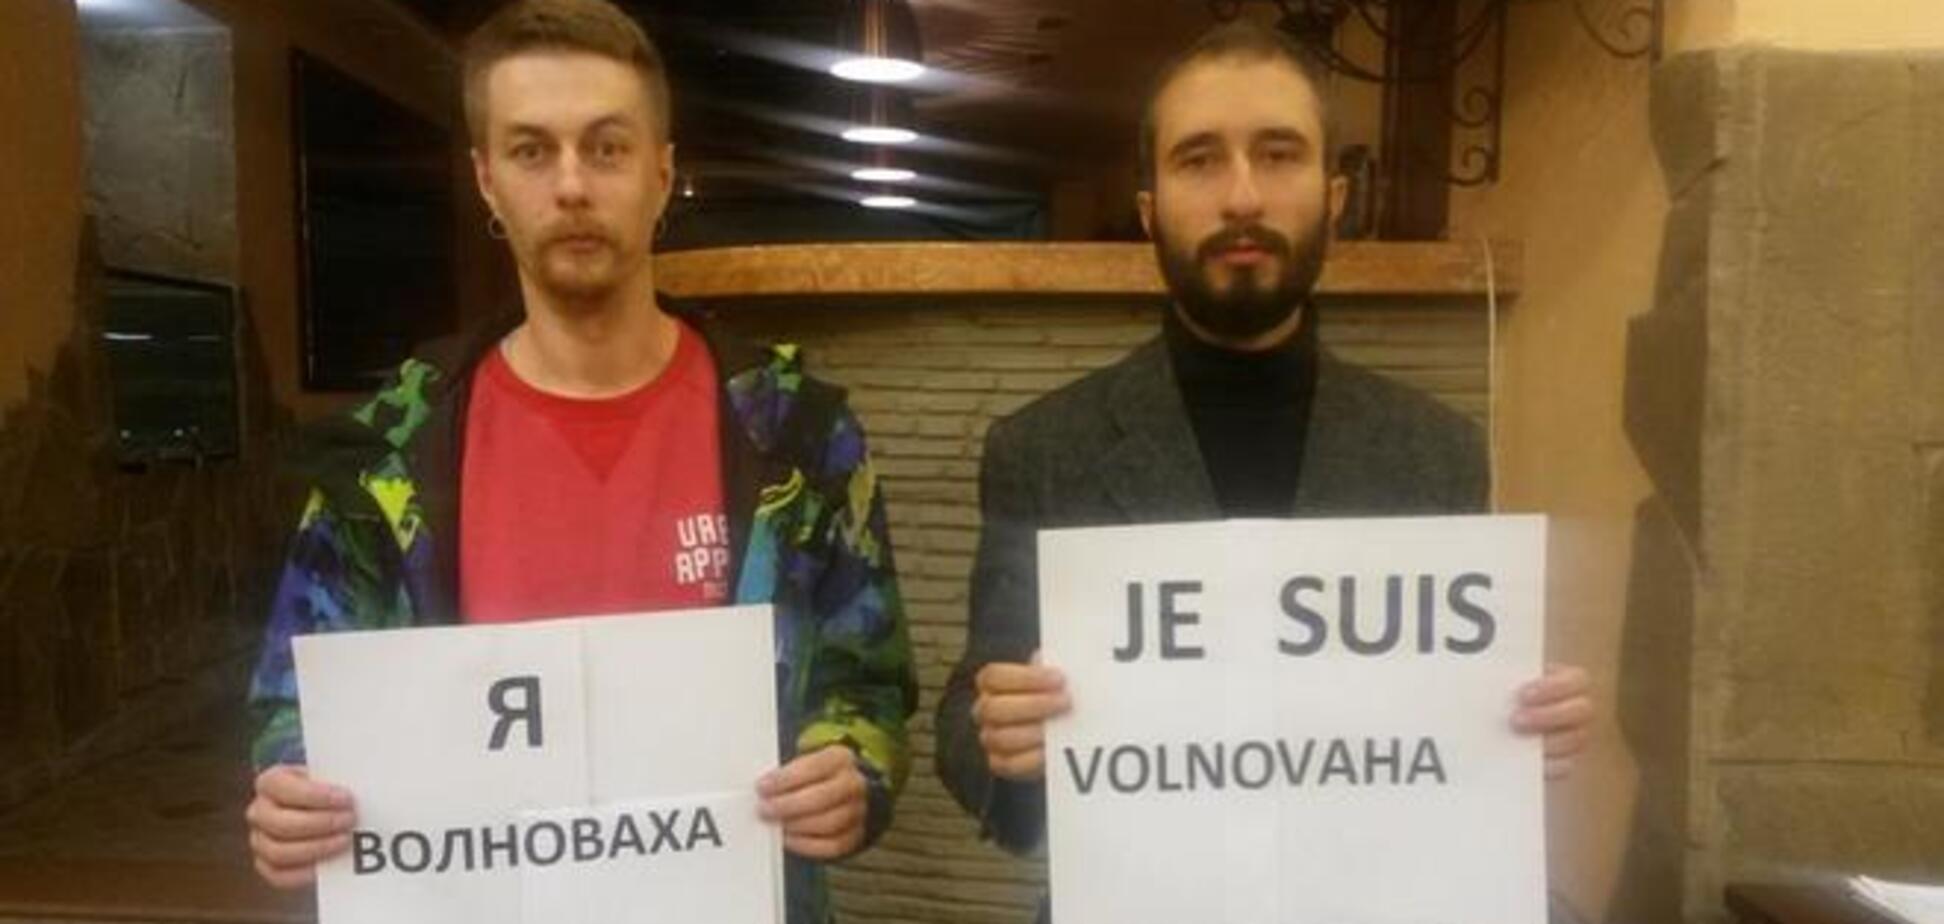 'Я - Волноваха': акция против терроризма на Донбассе взорвала Сеть